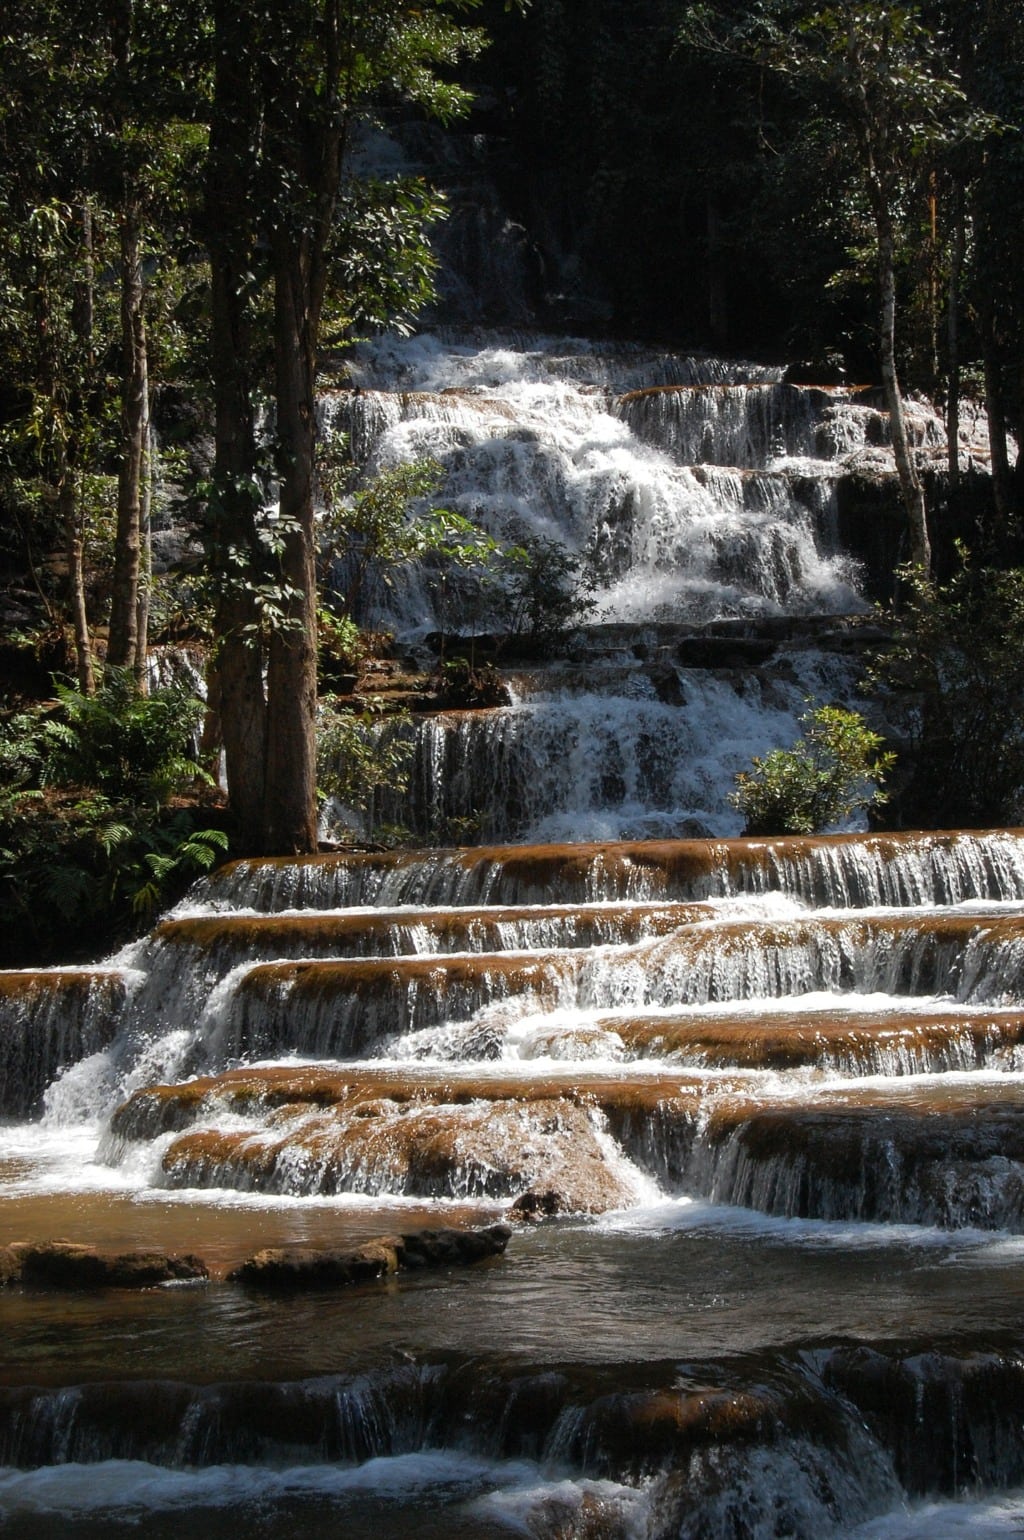 Pacharoen waterfall in Thailand